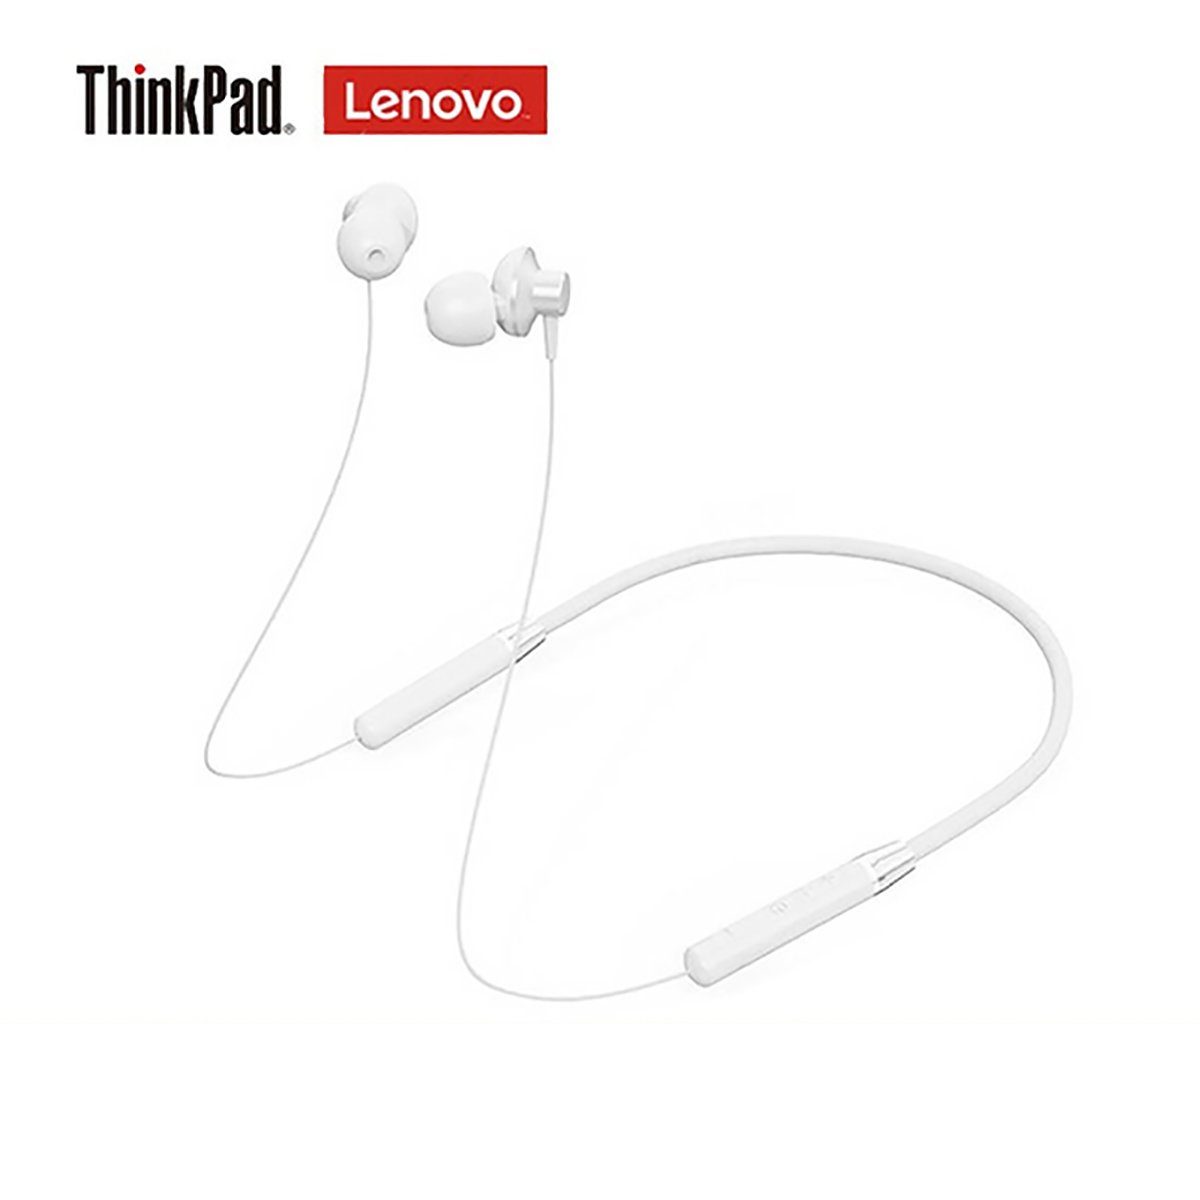 bis Bluetooth-Kopfhörer Lenovo mit Mikrofon - HE05 Stereo-Ohrhörer, Weiß) mit Touch-Steuerung zu 5.0, 6 (Bluetooth Stunden, Akkulaufzeit